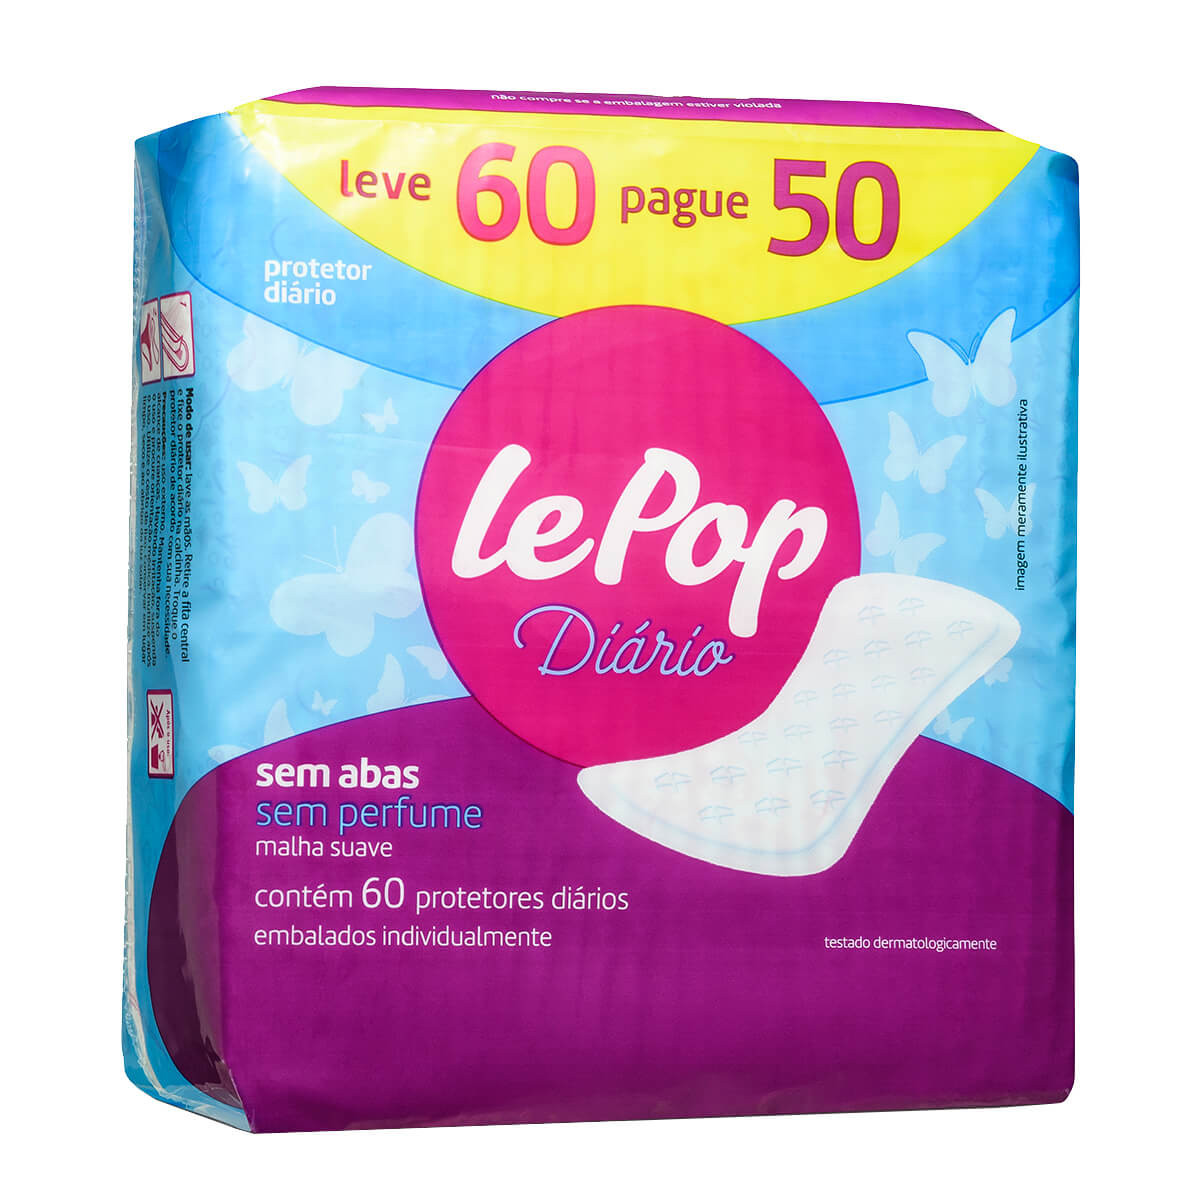 Protetor Diário Lepop Sem Perfume Leve 60 Pague 50